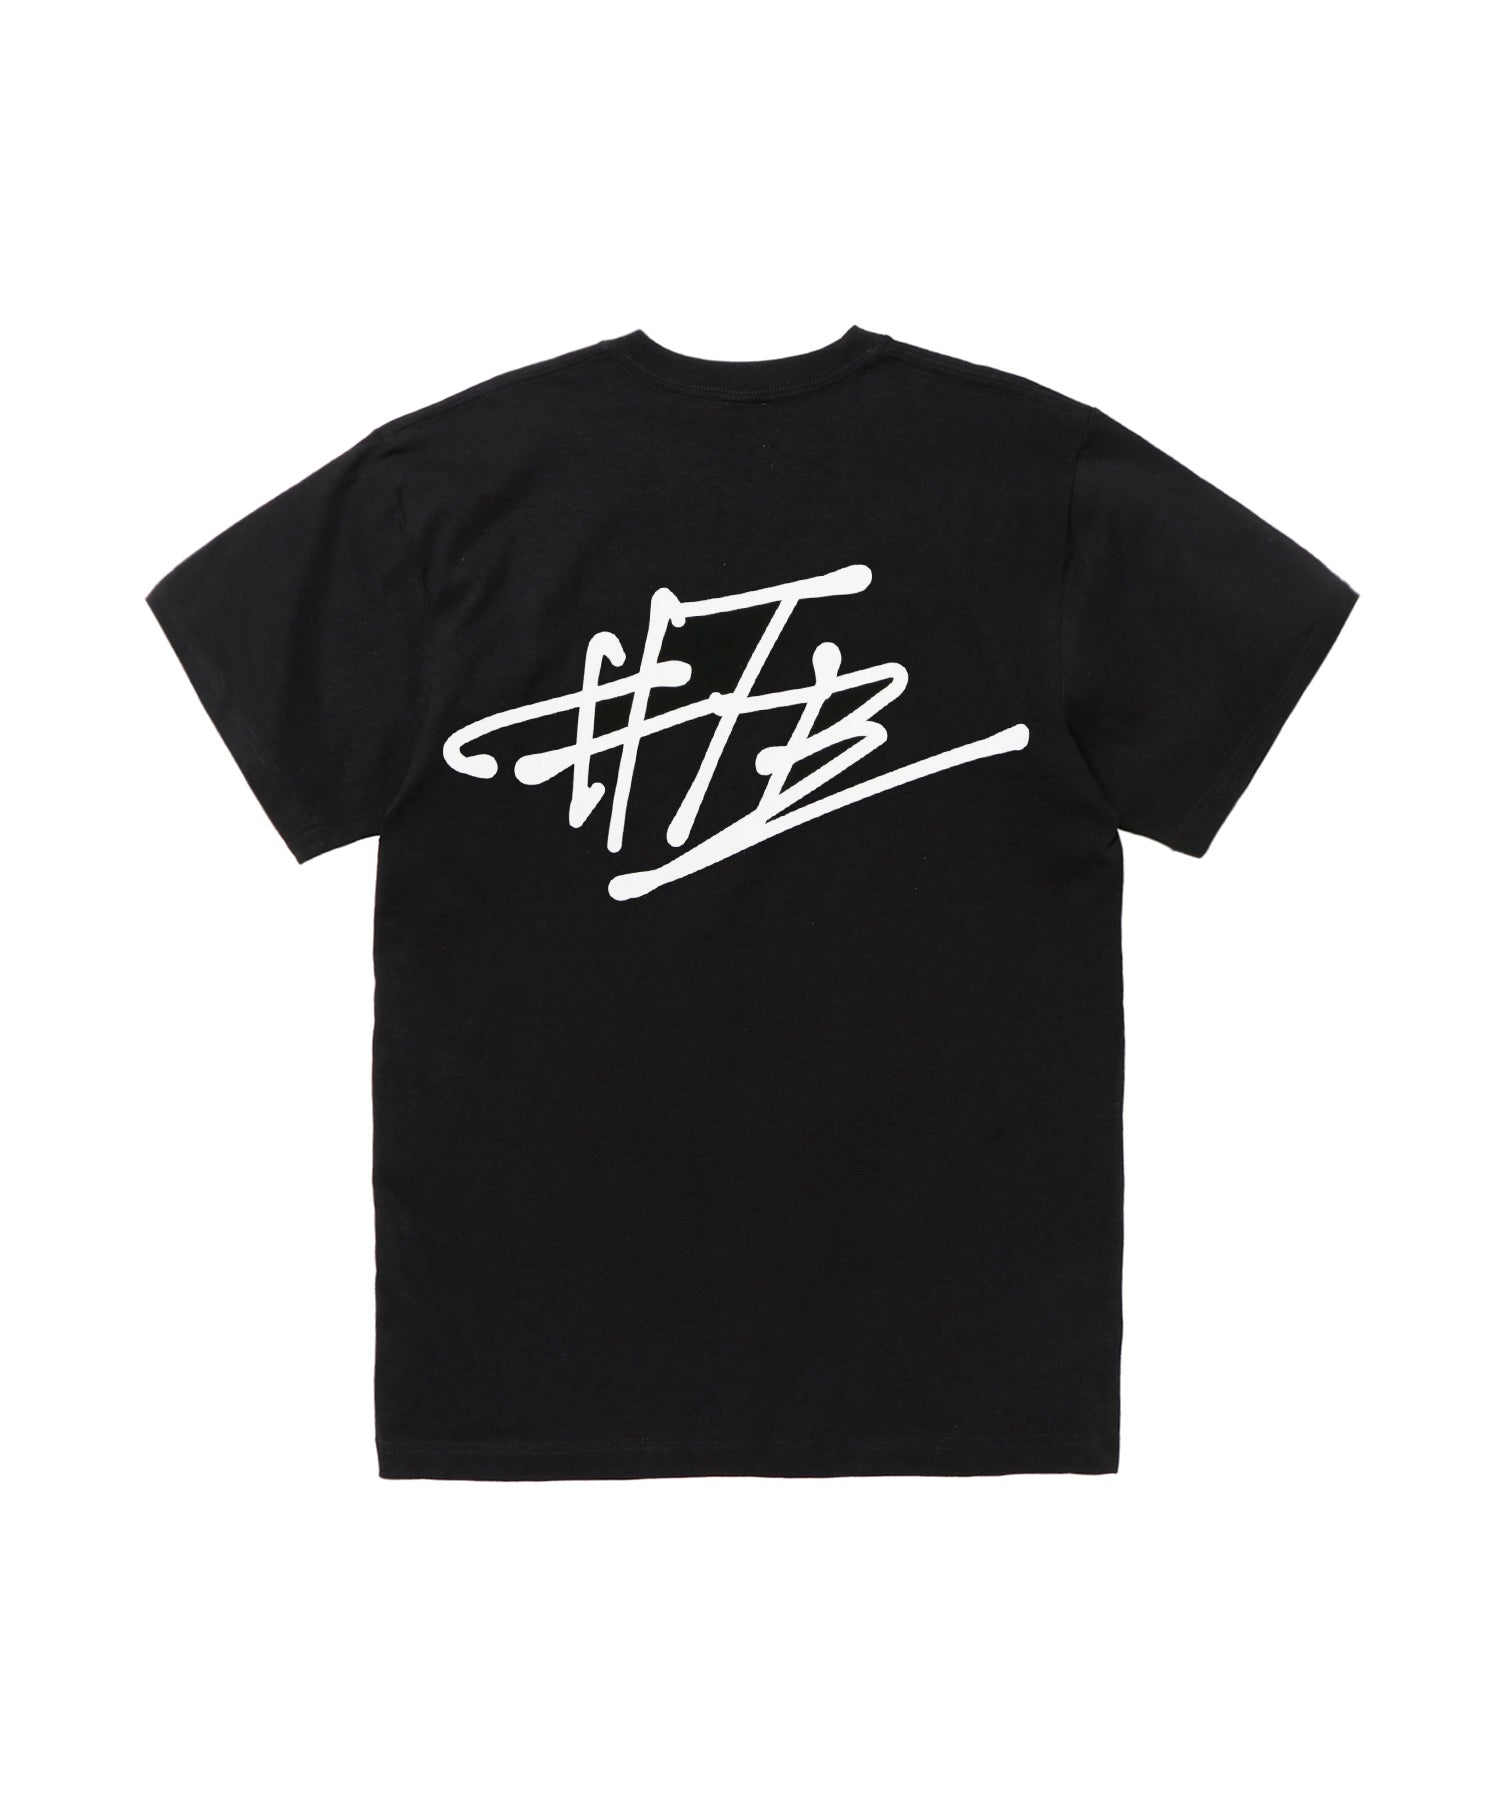 FR2 Sign T-shirt